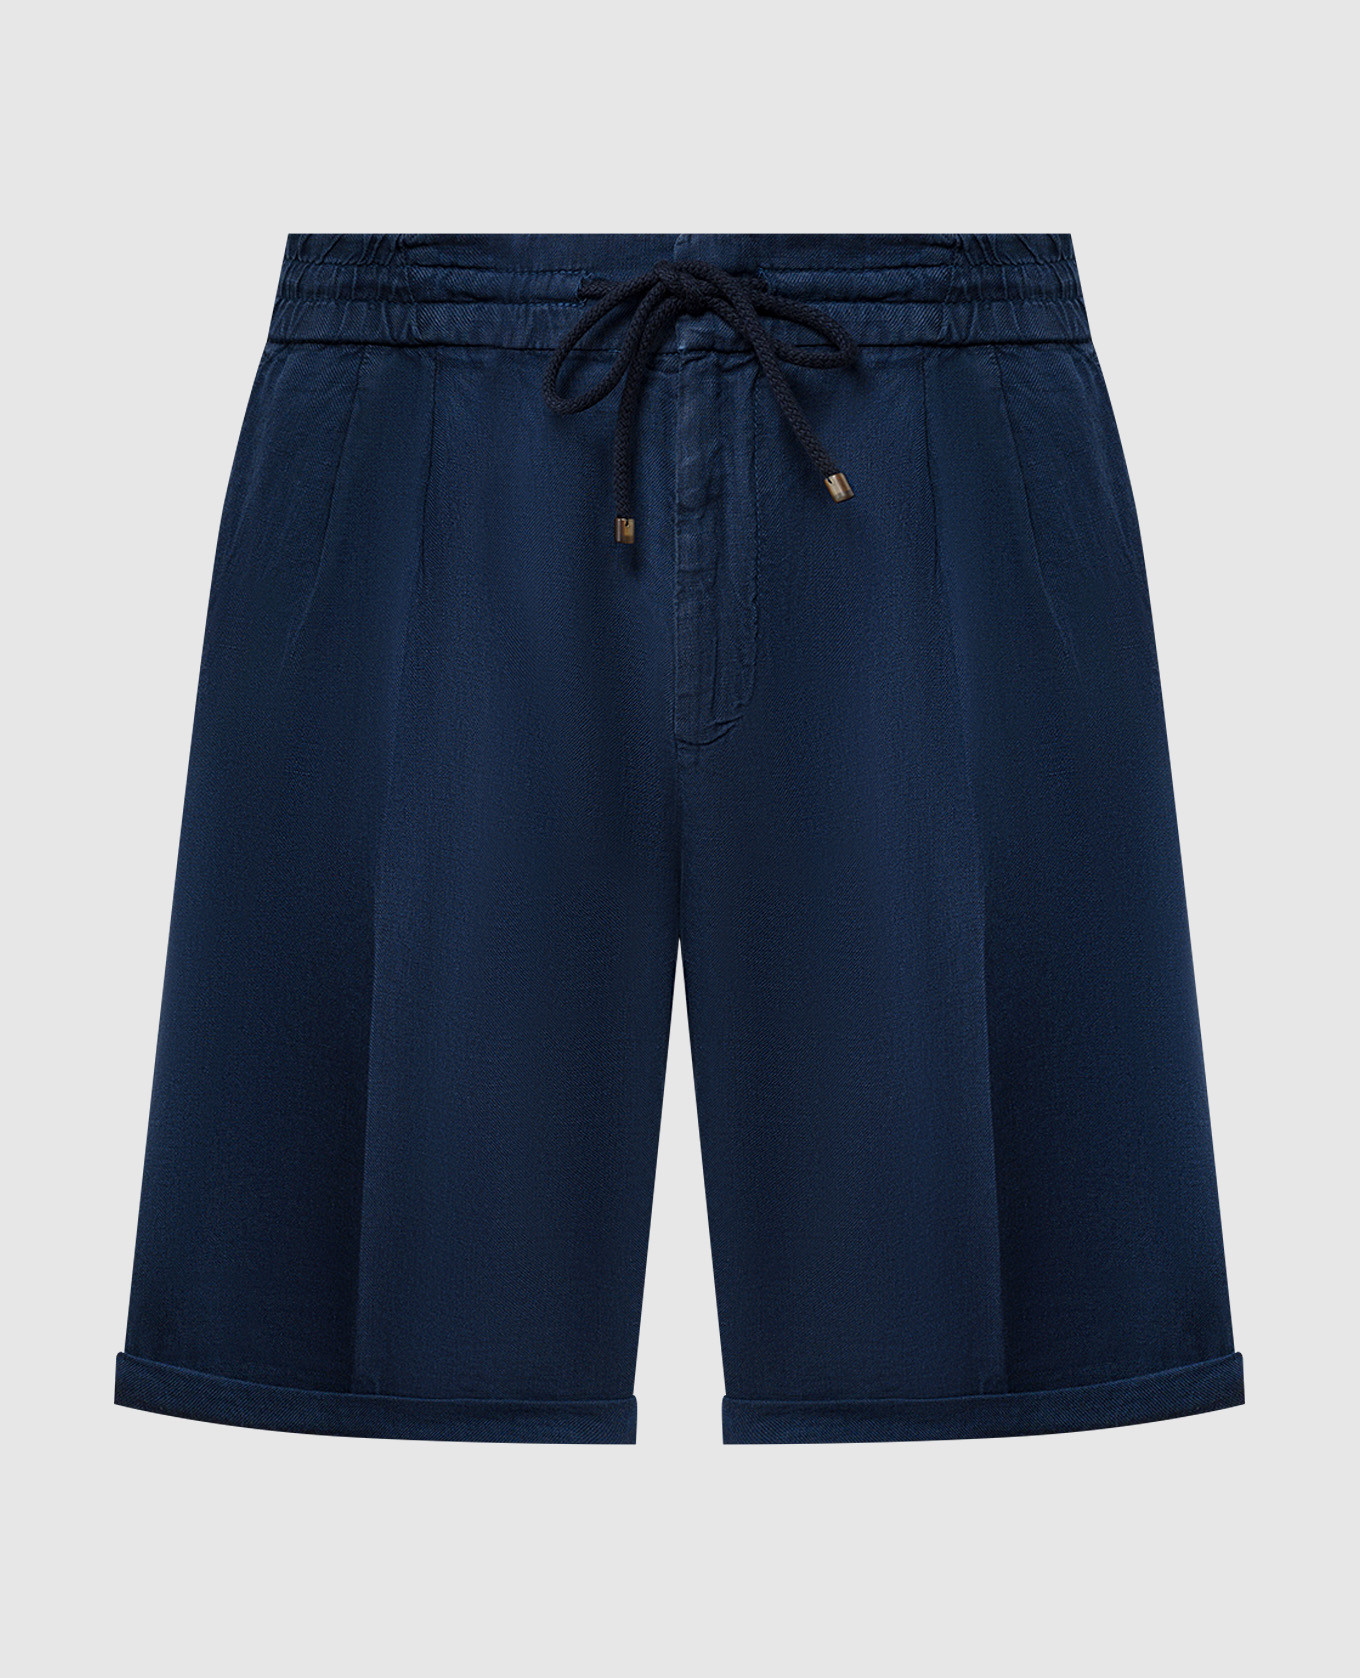 Blue linen shorts with lapels